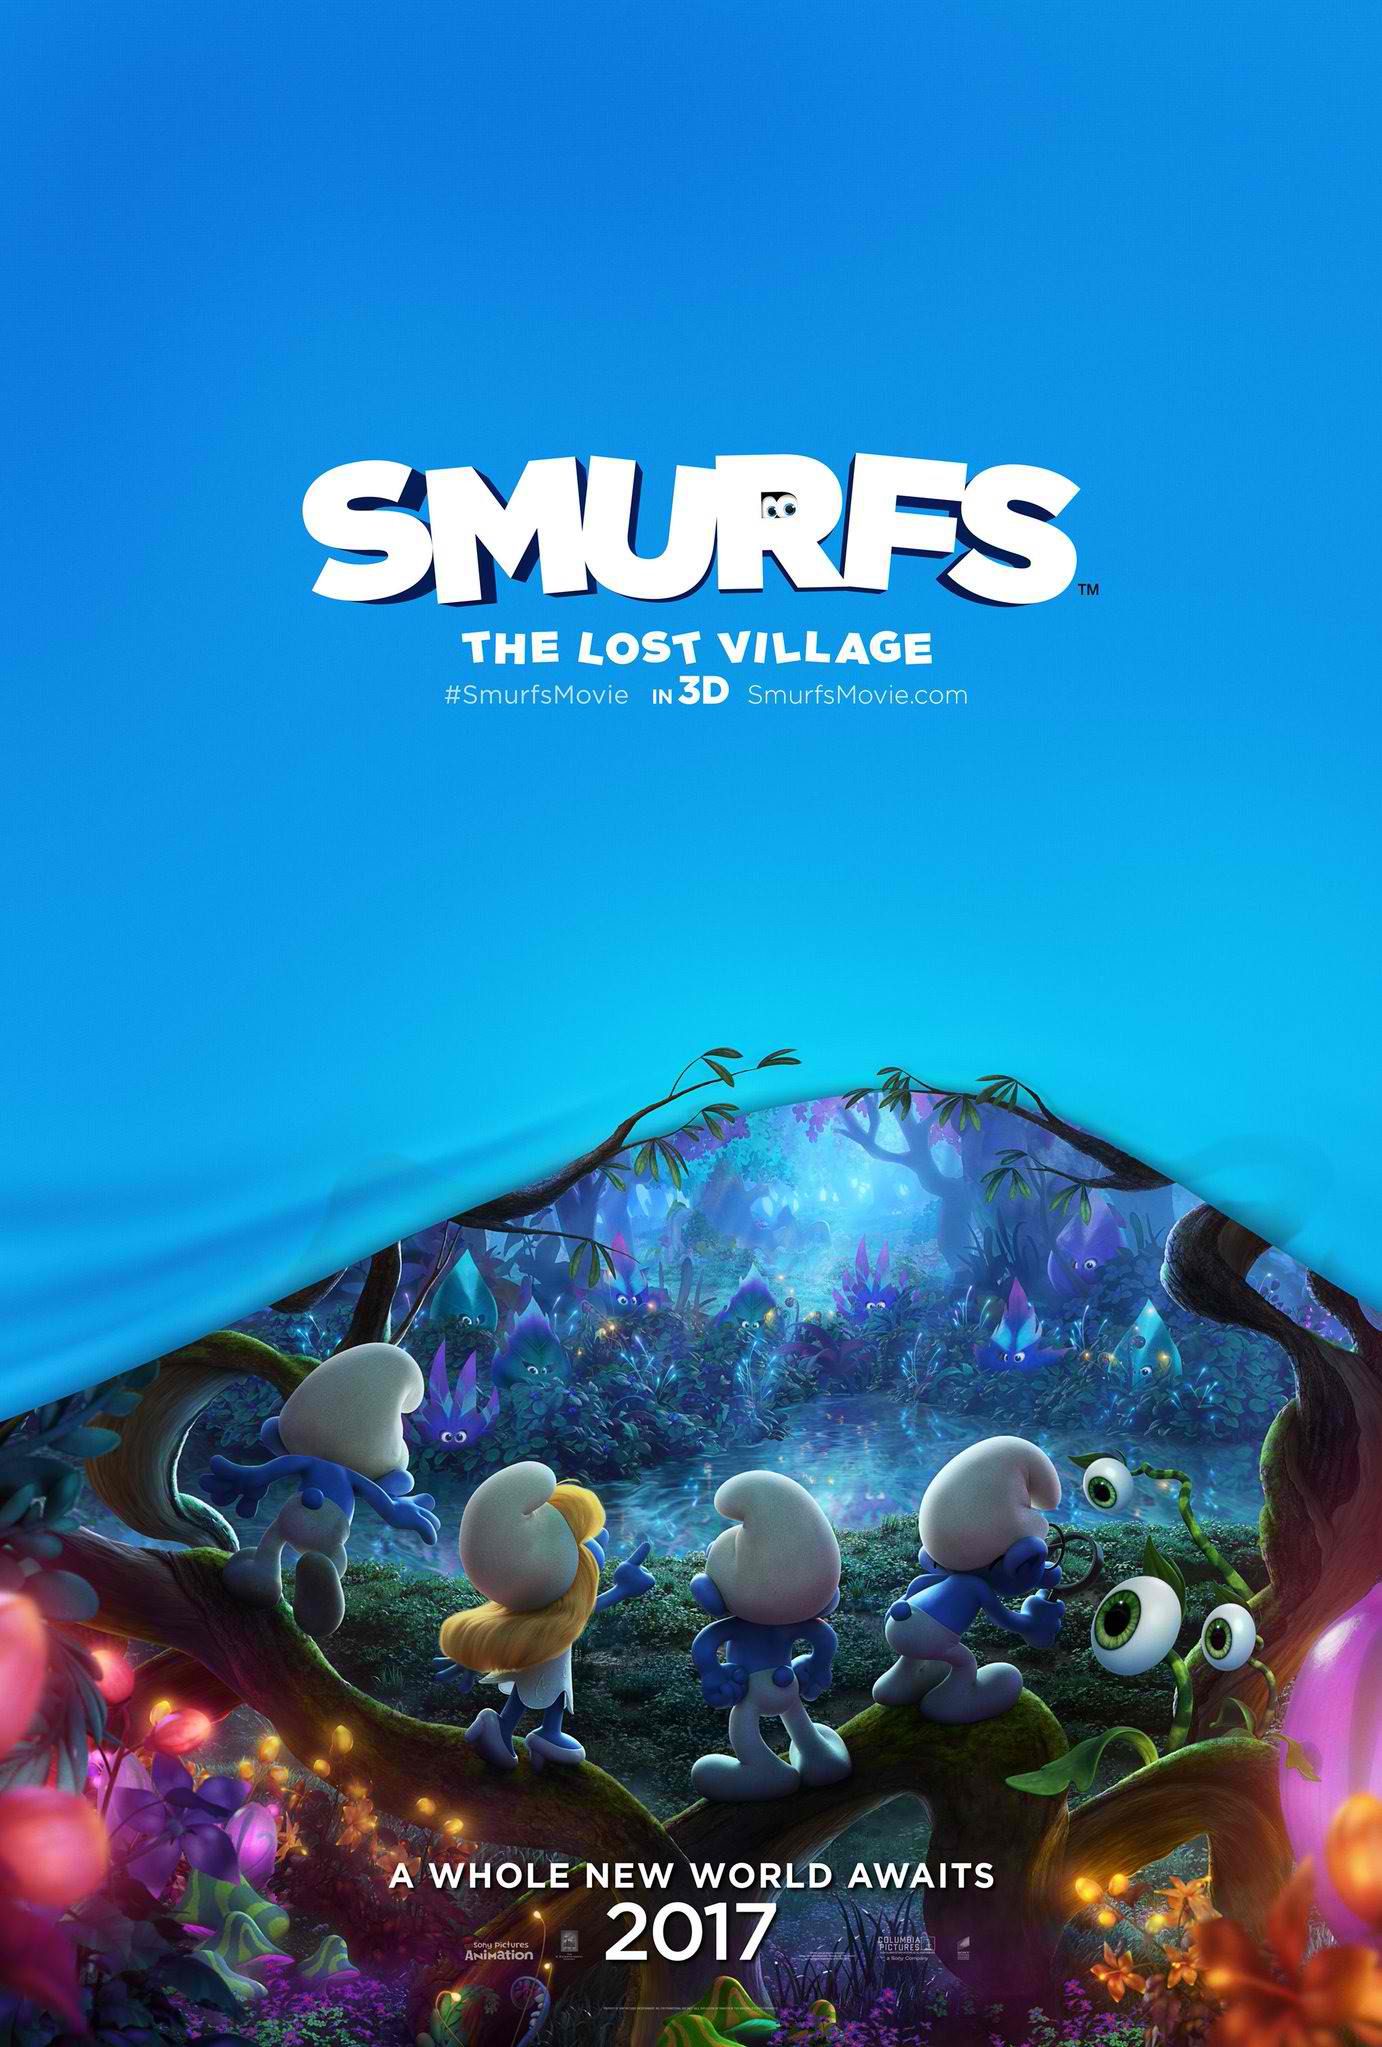 “Smurfs: The Lost Village” gets a teaser trailer